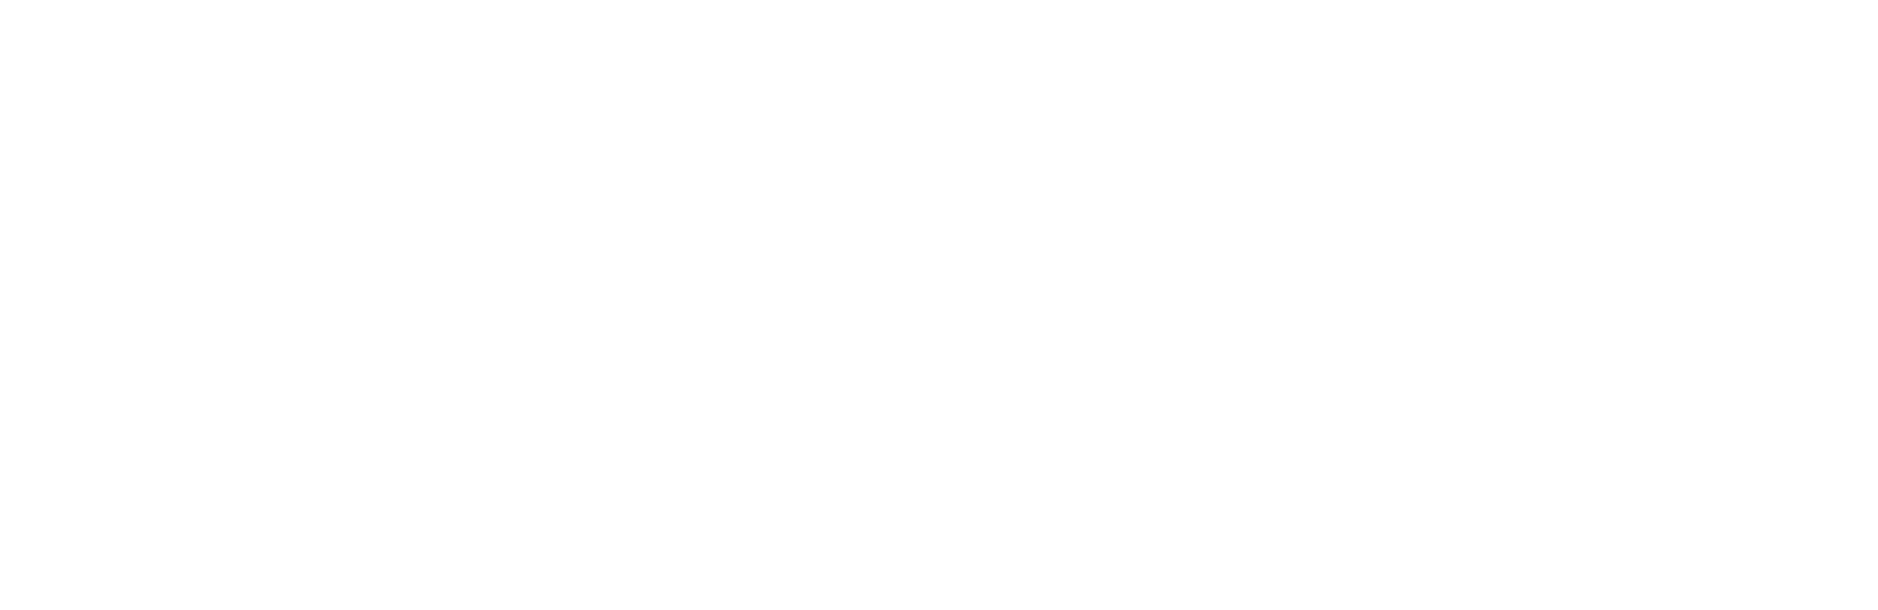 Plan de Recuperación Transformación y Reliliencia